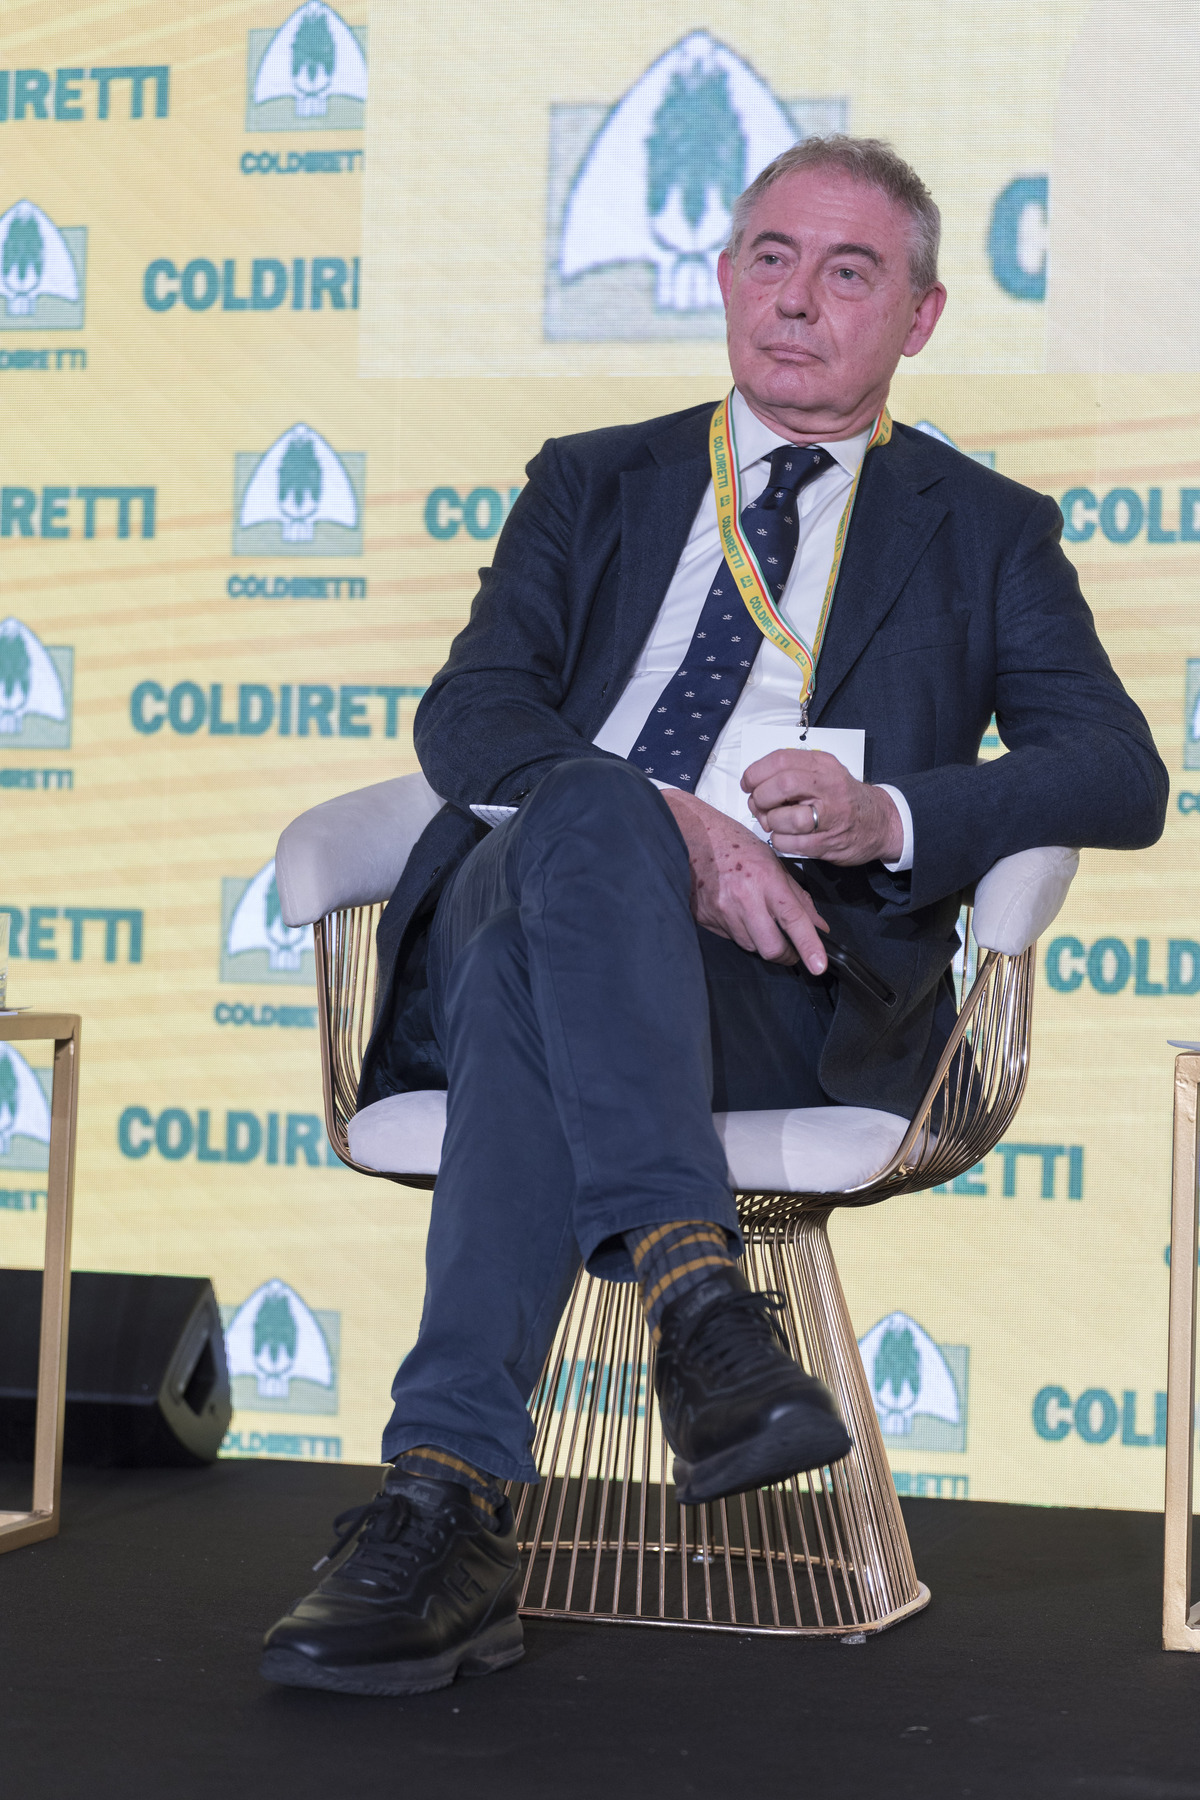 Coldiretti celebra l'eccellenza agroalimentare: 600 mld per il cibo Made in Italy